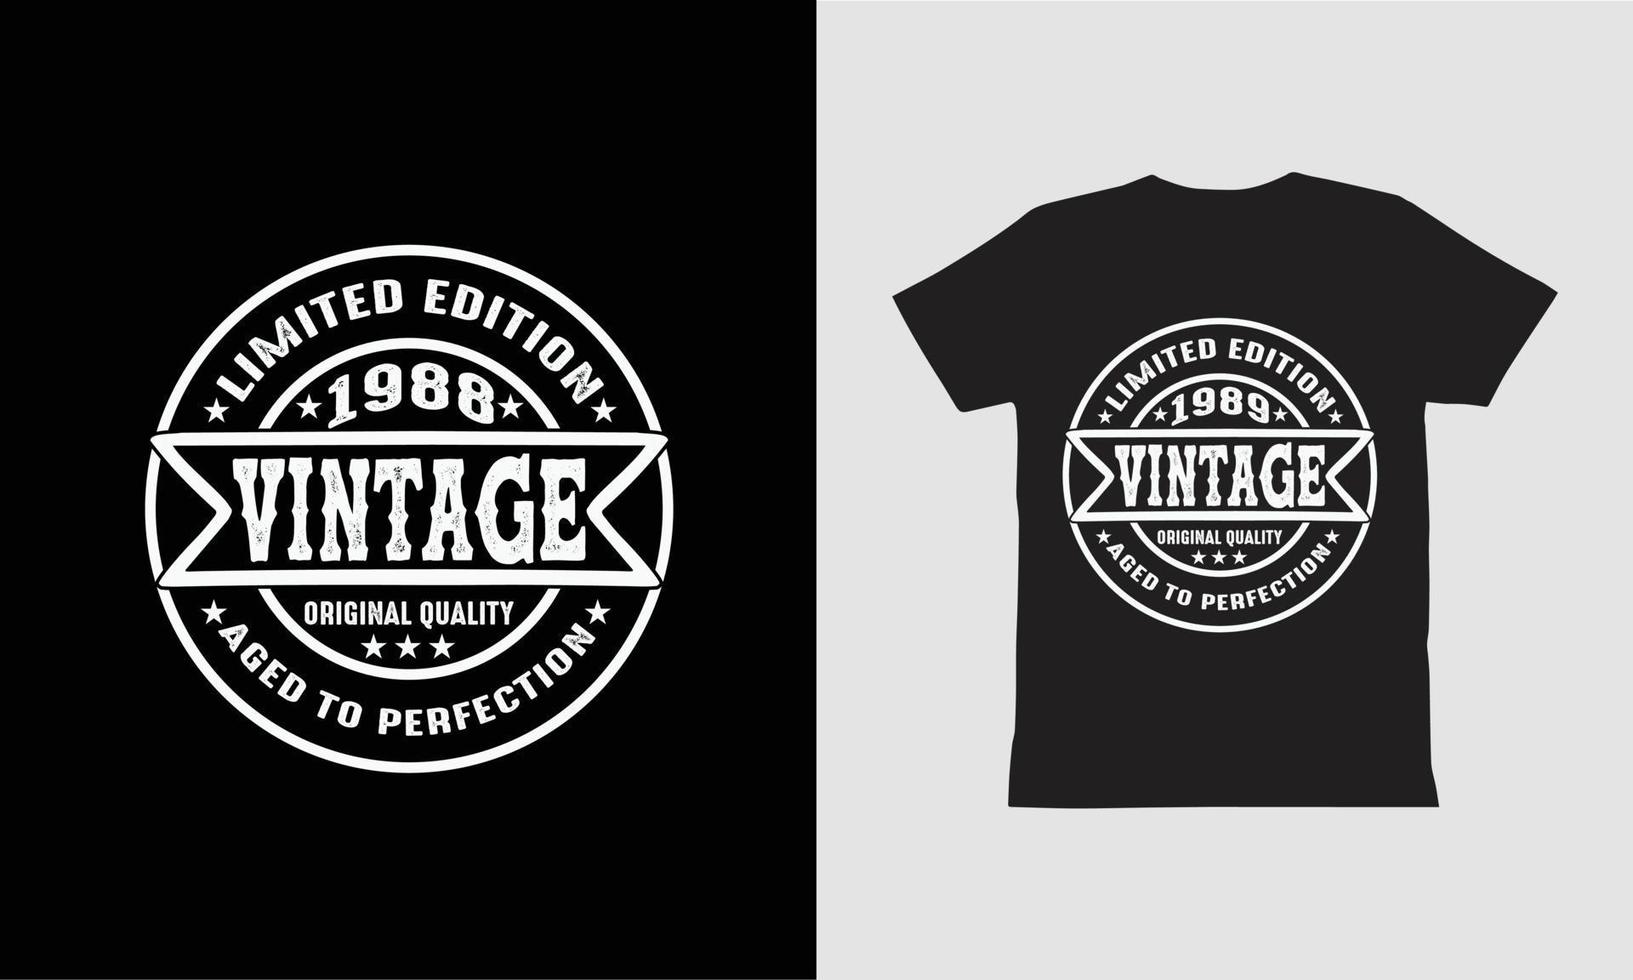 edição limitada vintage 1988 e 1989 envelhecida à perfeição design de camiseta. vetor